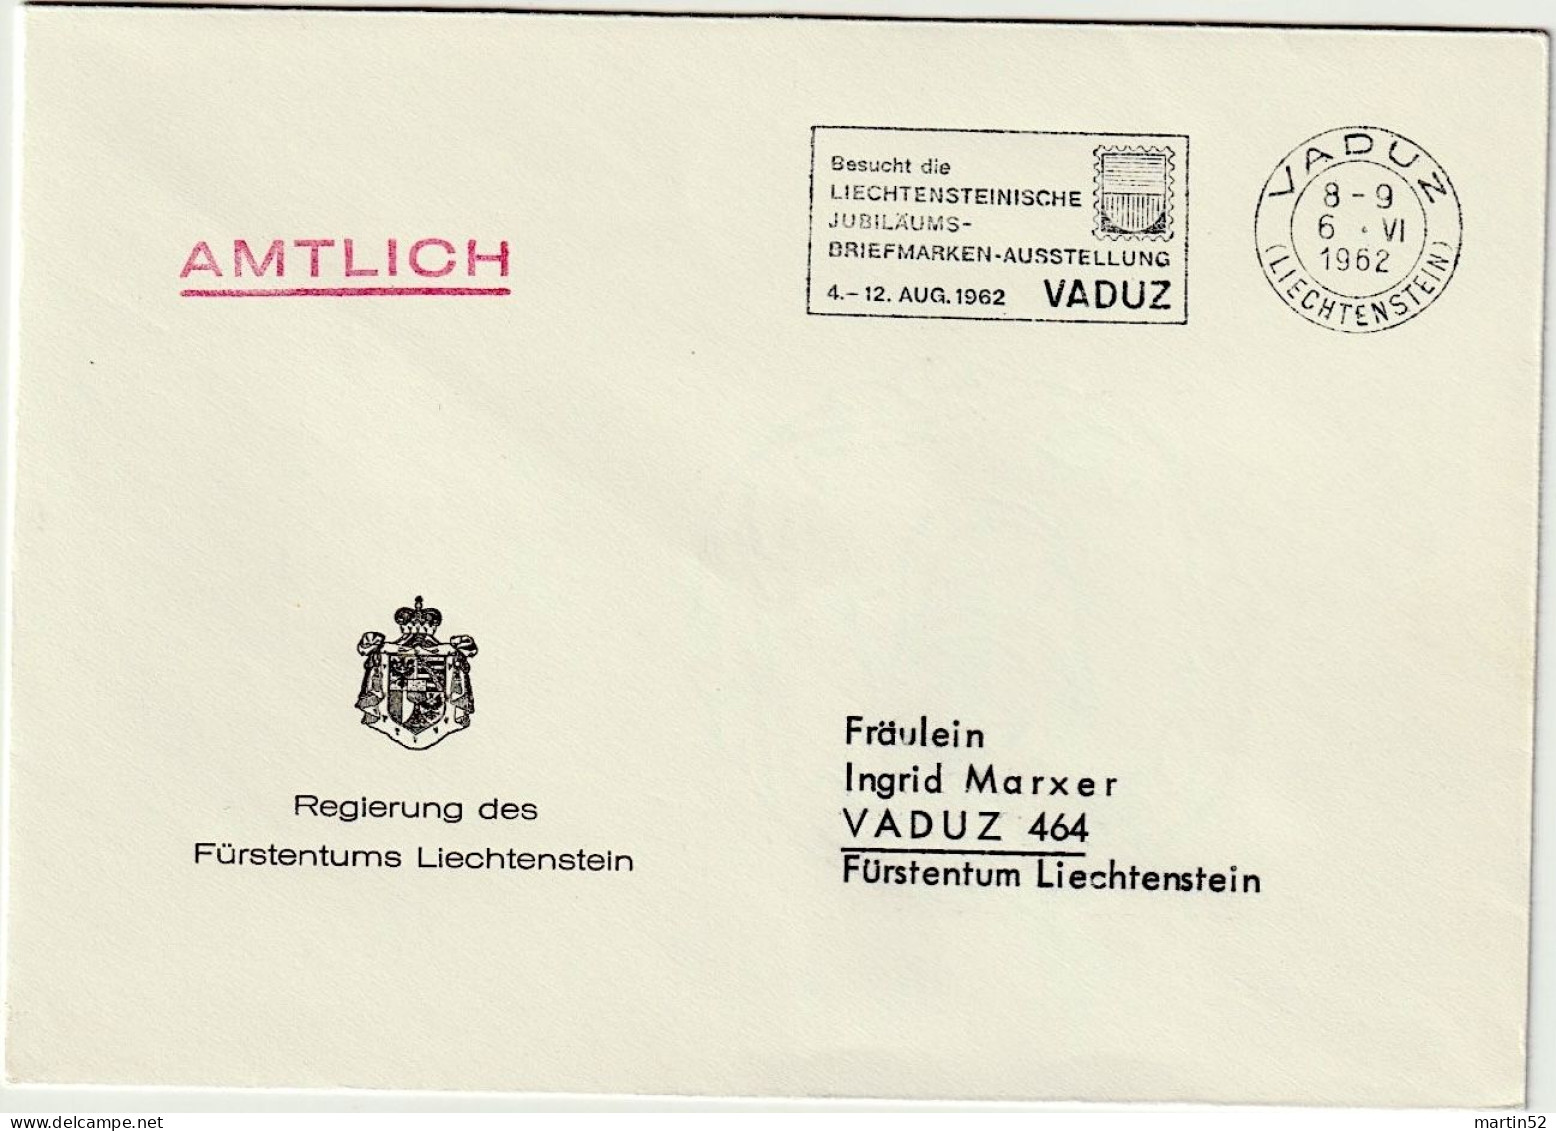 Liechtenstein 1962: Regierung Des F.L. AMTLICH Mit ⊙ VADUZ 6.VI.1962 Besucht Die Jubiläums-Briefmarken-Ausstellung - Official